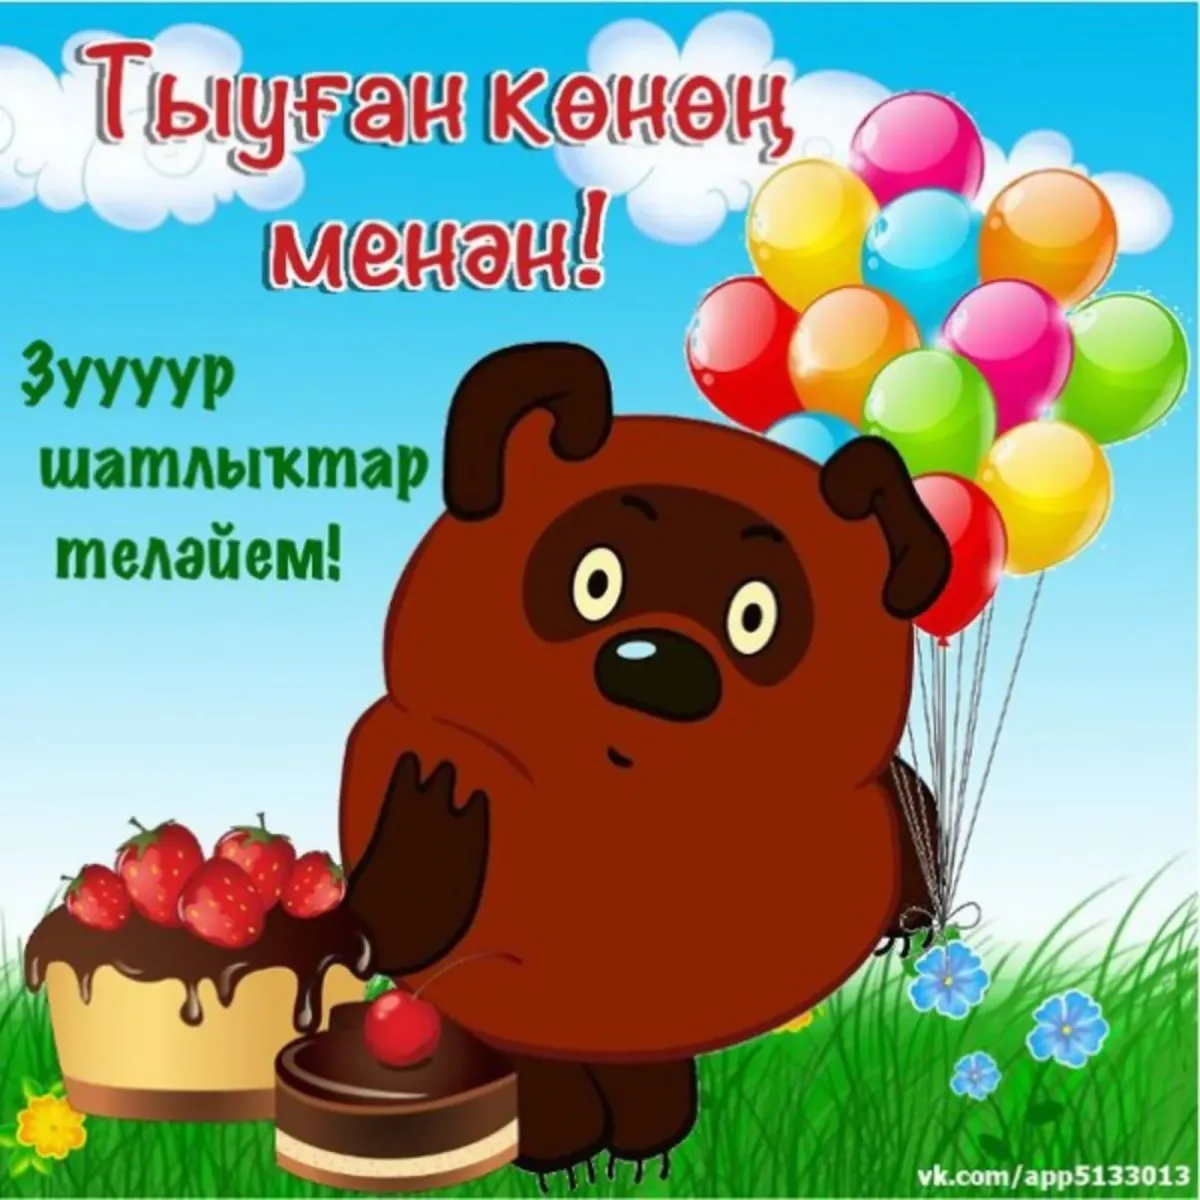 Башкирские пожелания на день рождения